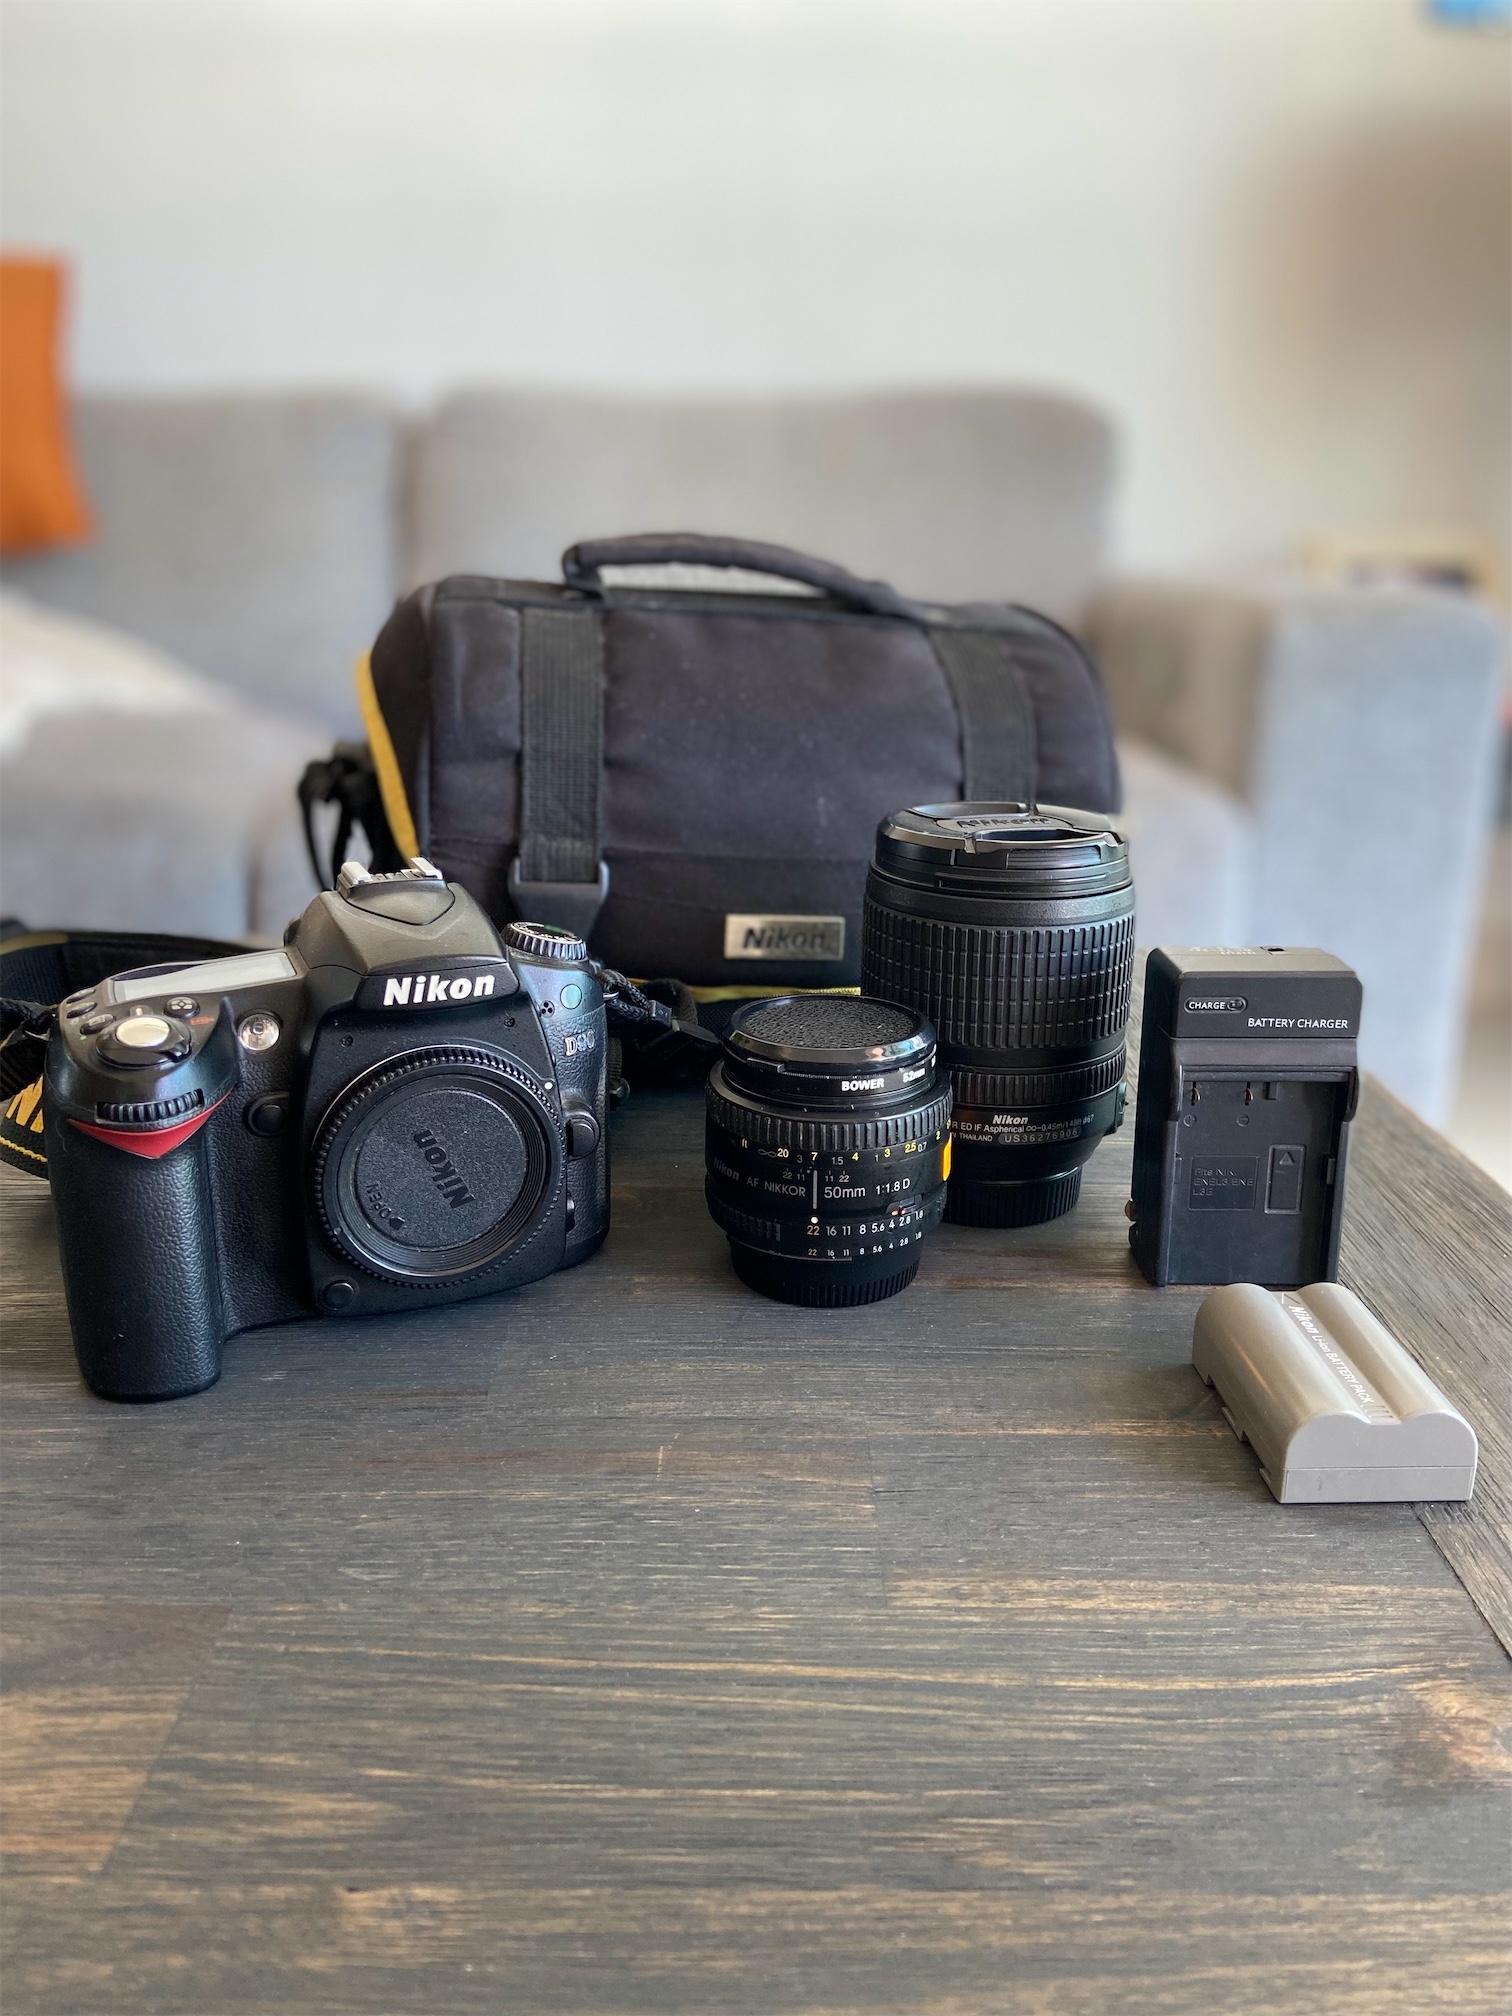 camaras y audio - Vendo cámara fotográfica digital Nikon D90, 2 lentes y accesorios 0